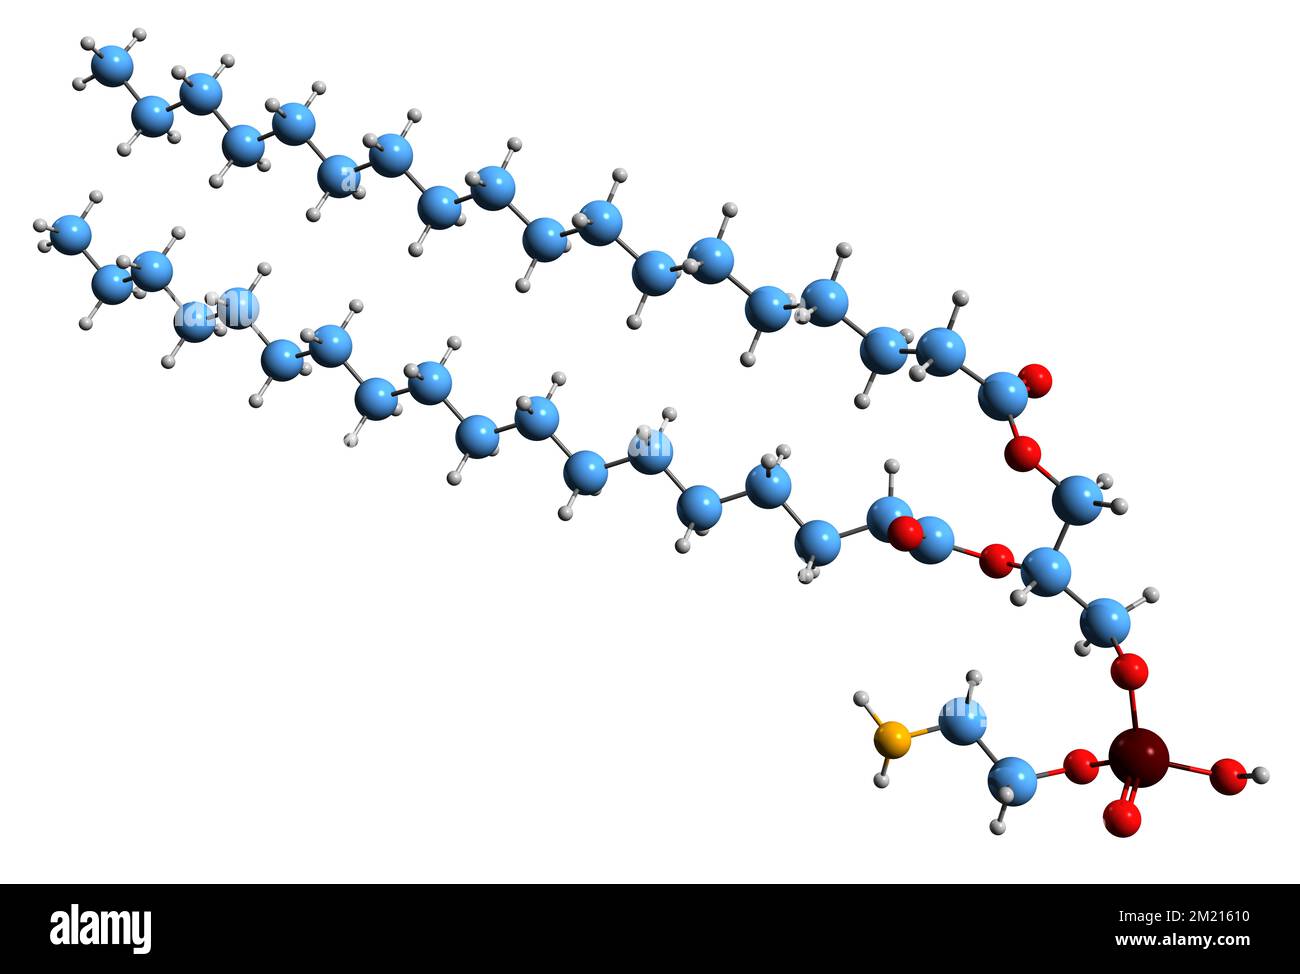 3D-Bild der Phosphatidylethanolamin-Skelettformel - molekularchemische Struktur des auf weißem Hintergrund isolierten Phospholipids Stockfoto